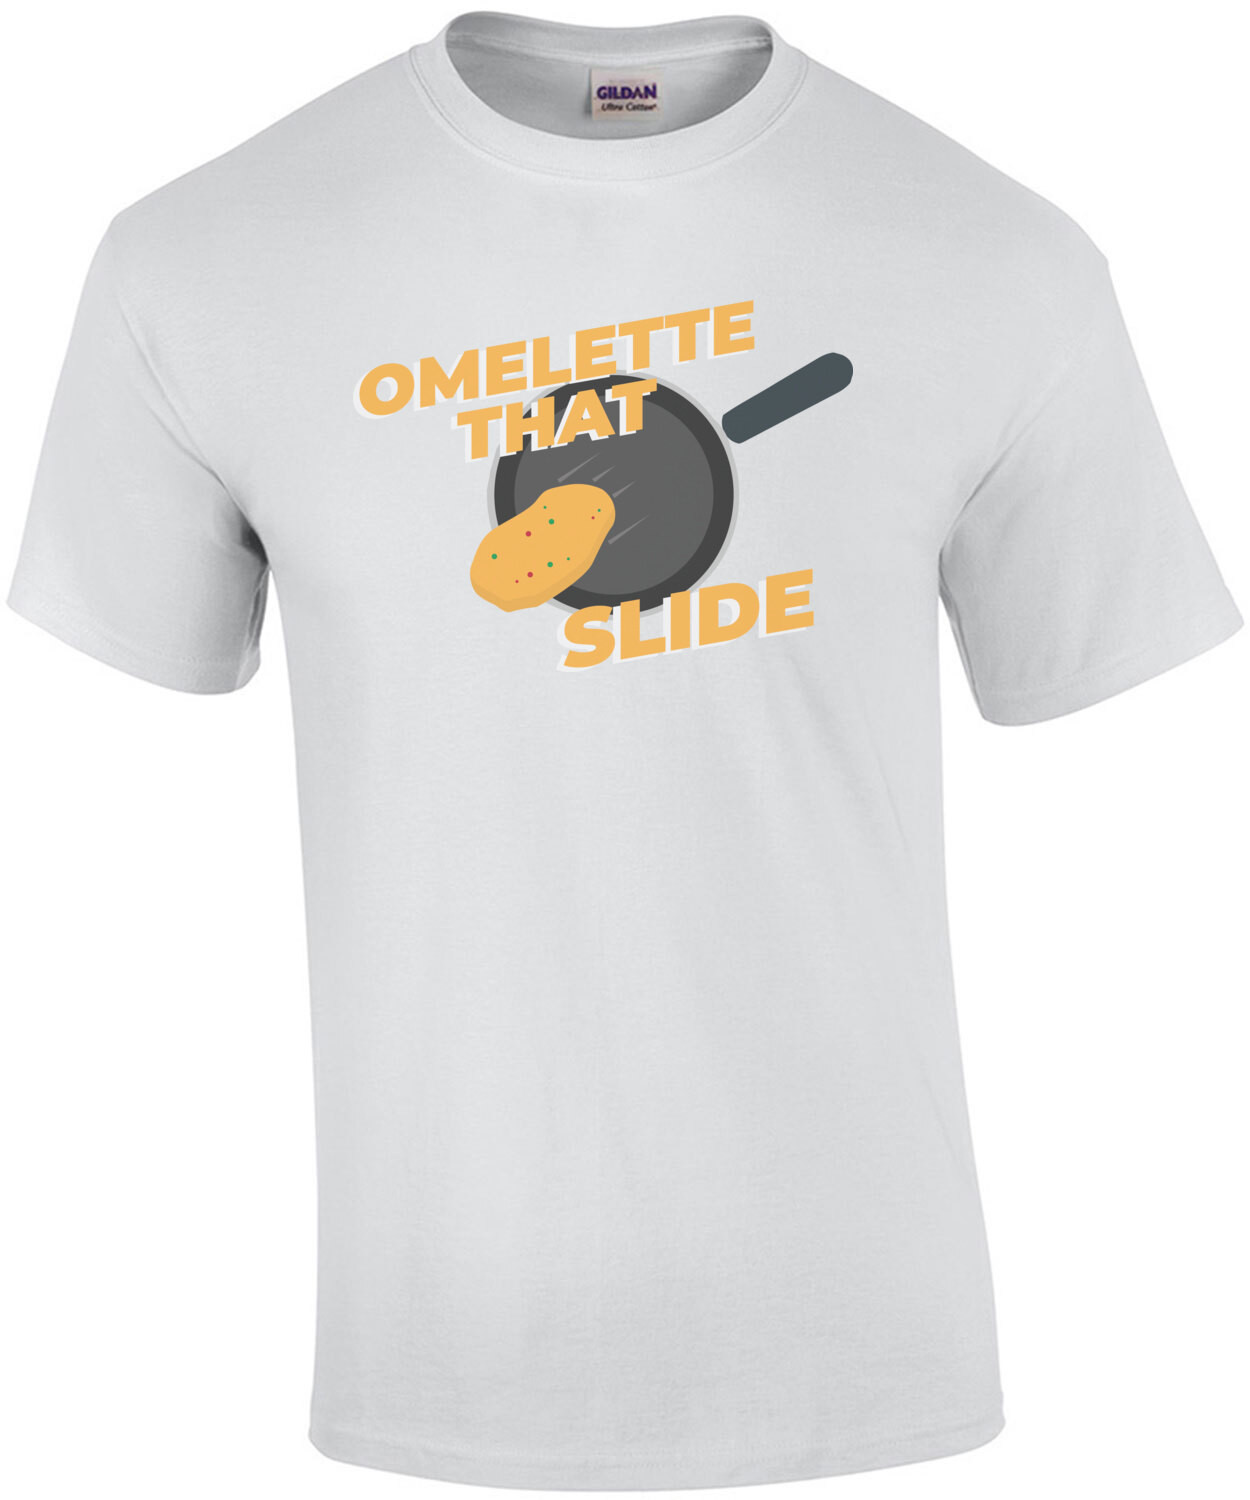 Omelette That Slide - Funny Pun T-Shirt